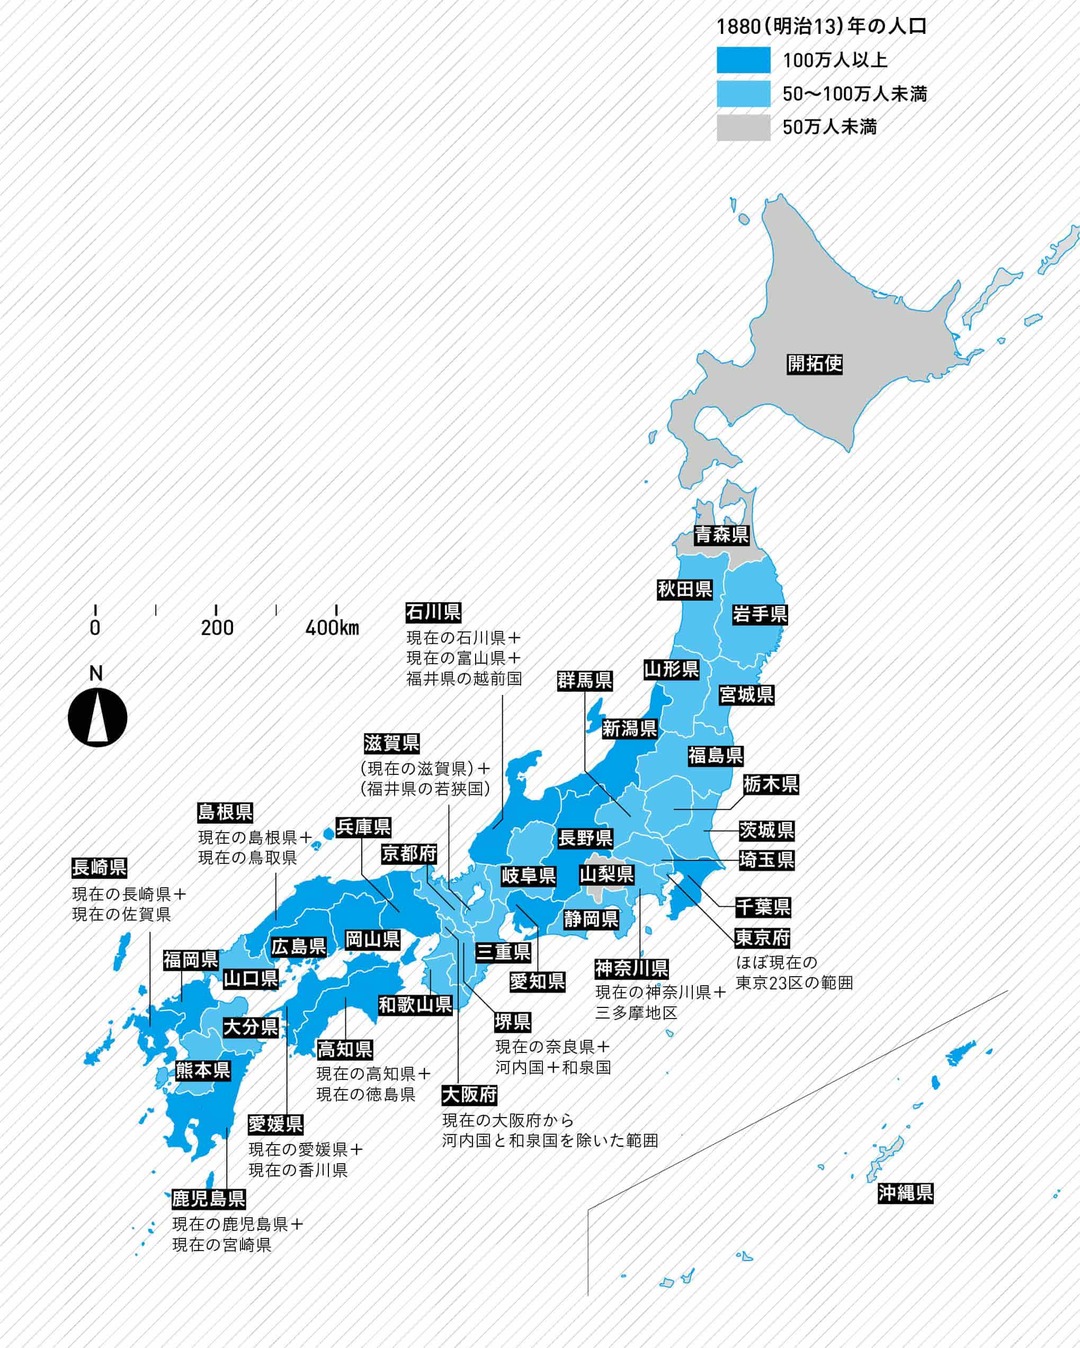 意外な結果 140年前の日本の人口ランキング 3位愛媛 2位新潟 1位は ニュース3面鏡 ダイヤモンド オンライン